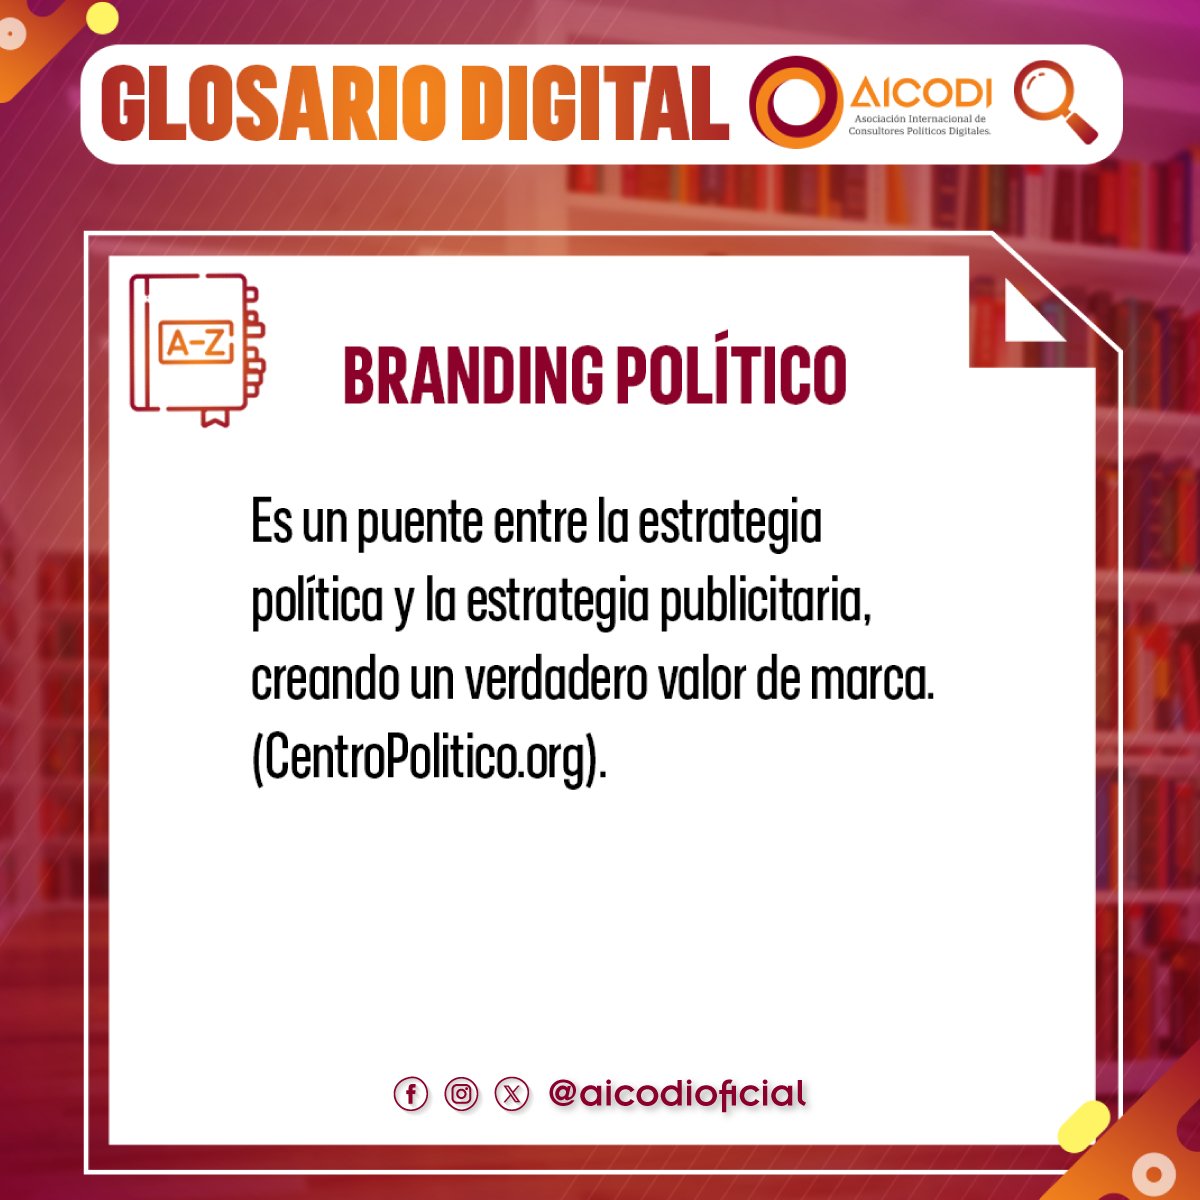 👉 ¿Qué significa el #BrandingPolítico? Descúbrelo en nuestro #GlosarioDigital

🤓 No olvides guardar esta definición #SoyAicodi

#Compol #EstrategiaPolítica 
#ImagenPolítica